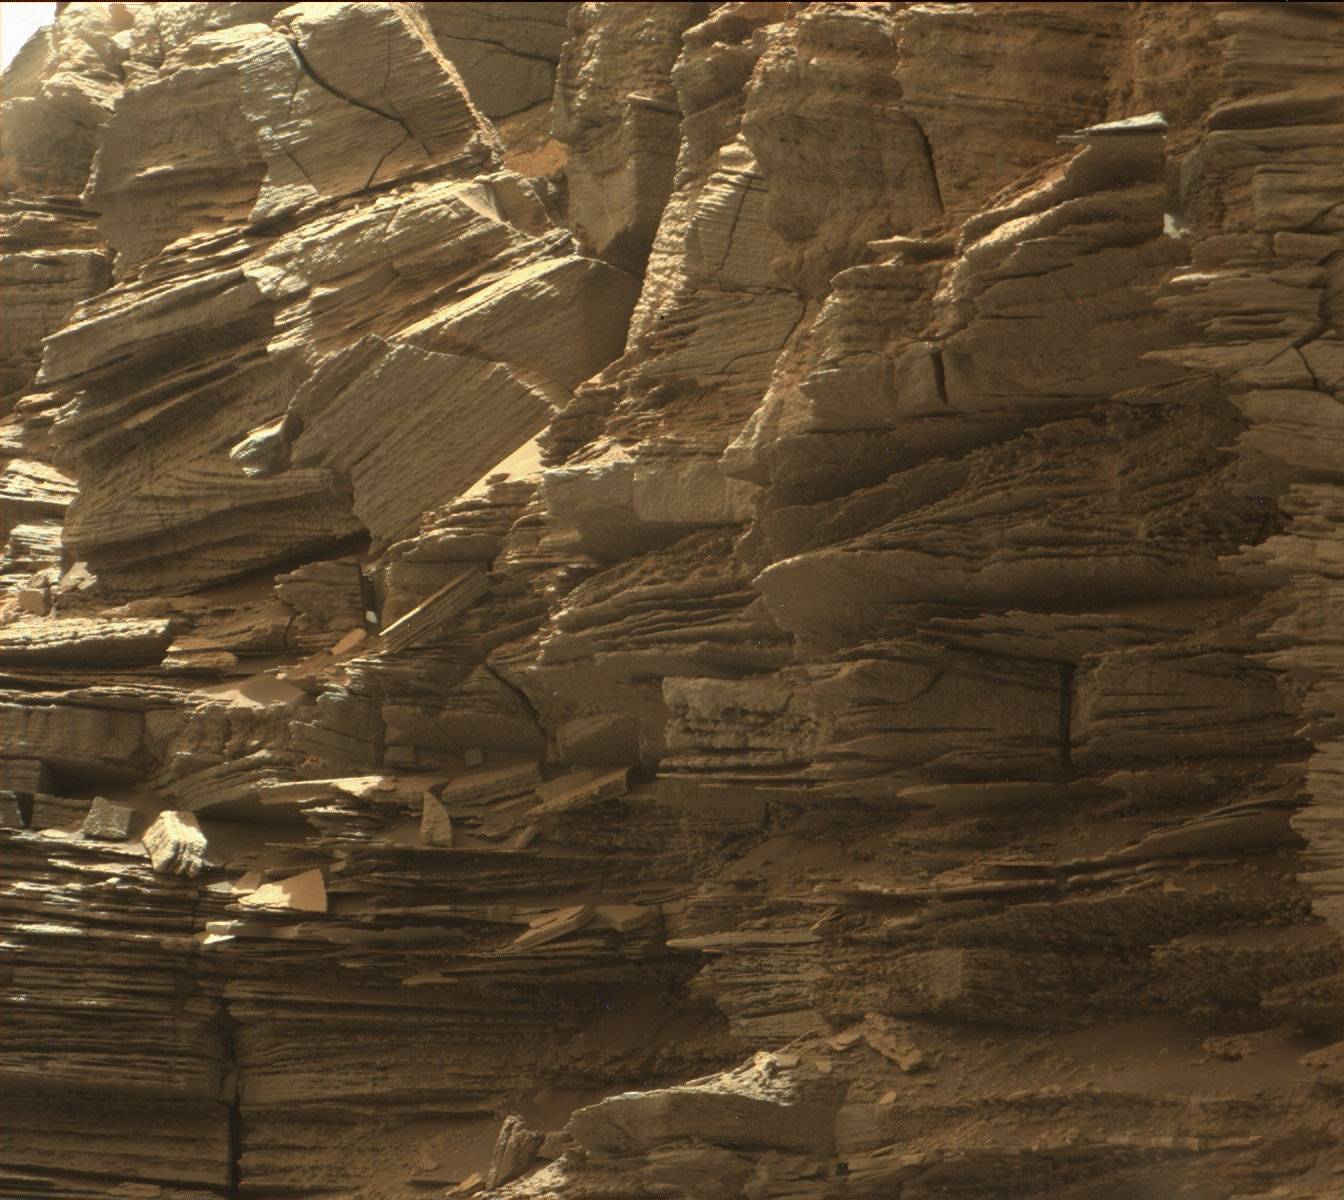 Risultato immagine per rover curiosity